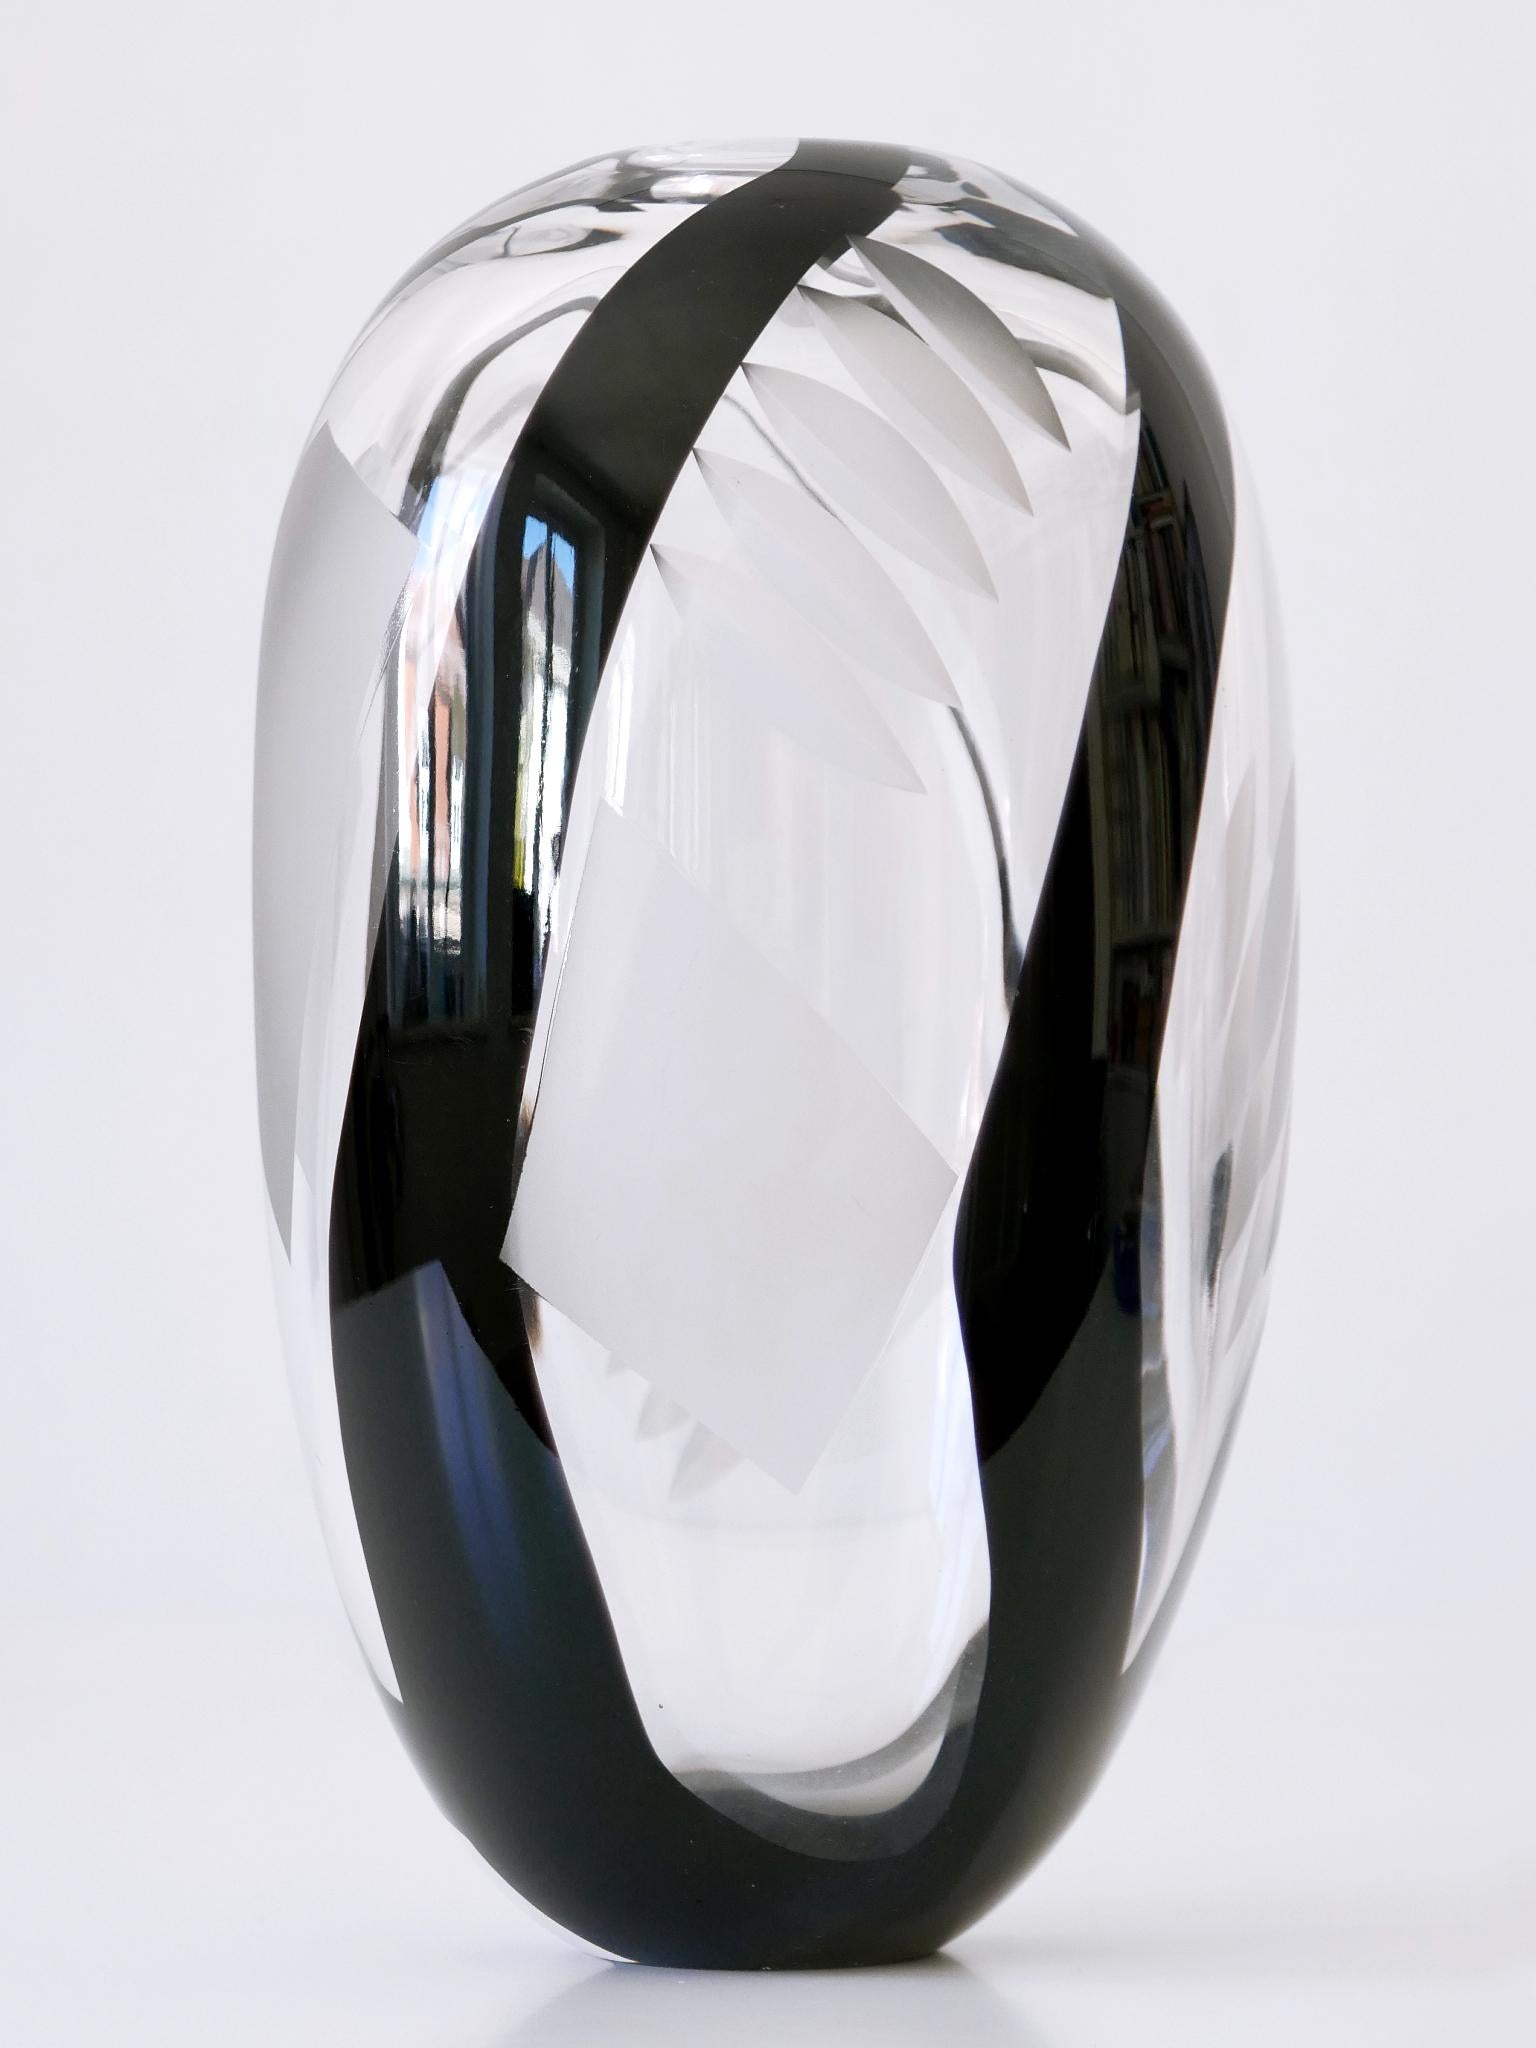 Unique Art Glass Vase by Anna Ehrer for Kosta Boda Sweden 1992 Signed For Sale 7